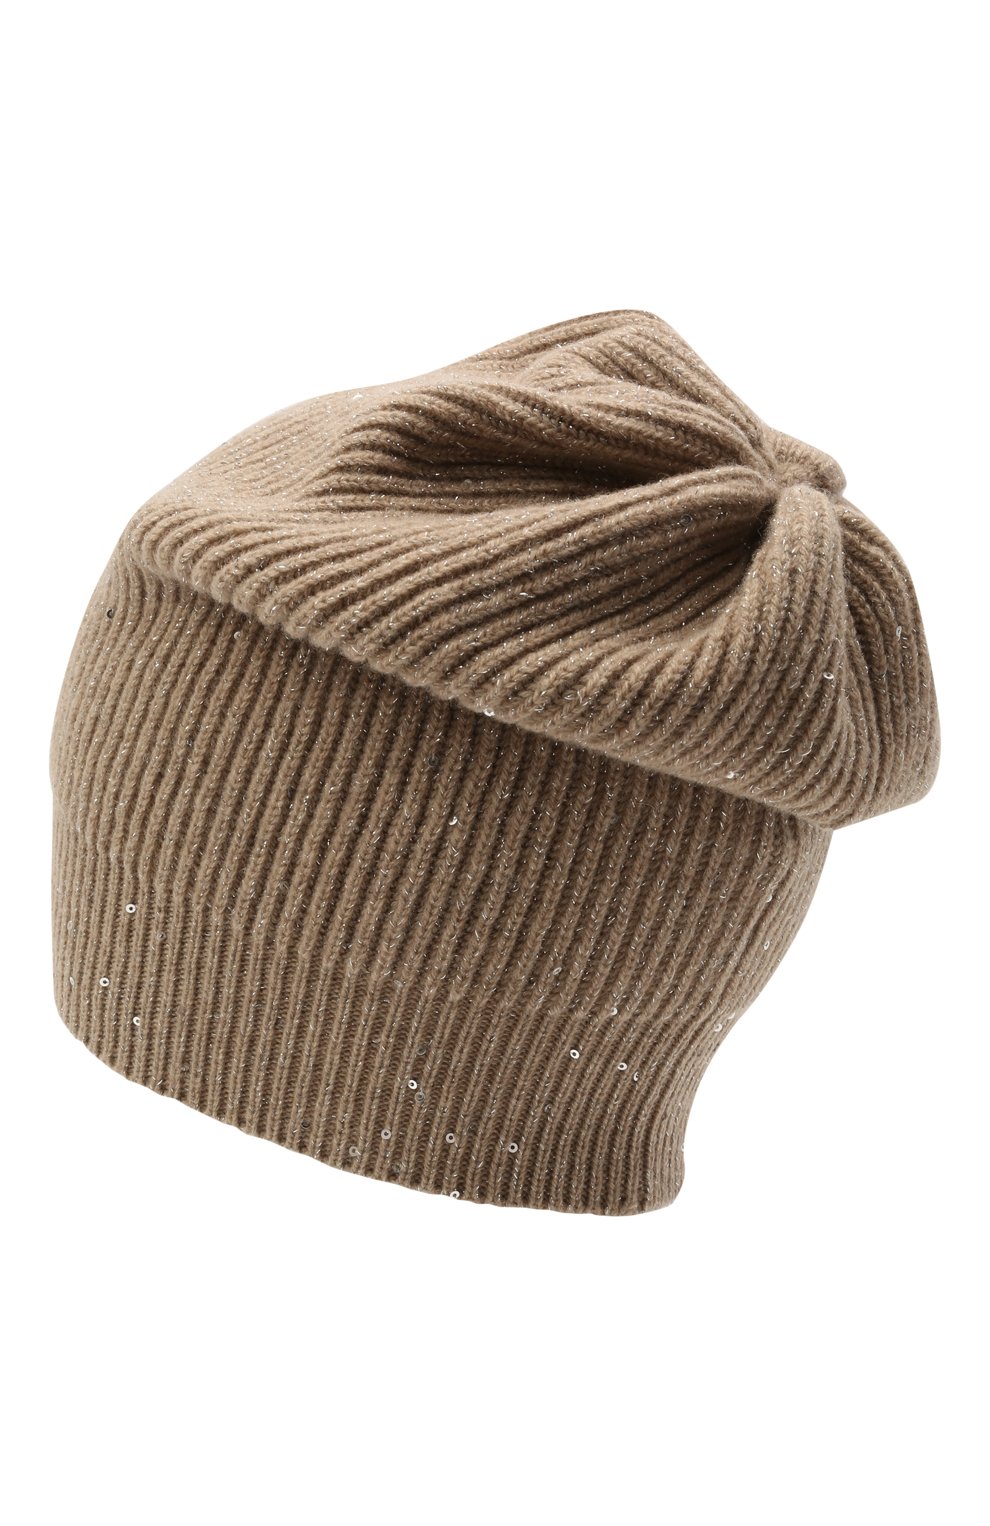 Женская шапка из кашемира и шерсти BRUNELLO CUCINELLI бежевого цвета, арт. MBM755889 | Фото 2 (Материал: Текстиль, Кашемир, Шерсть)